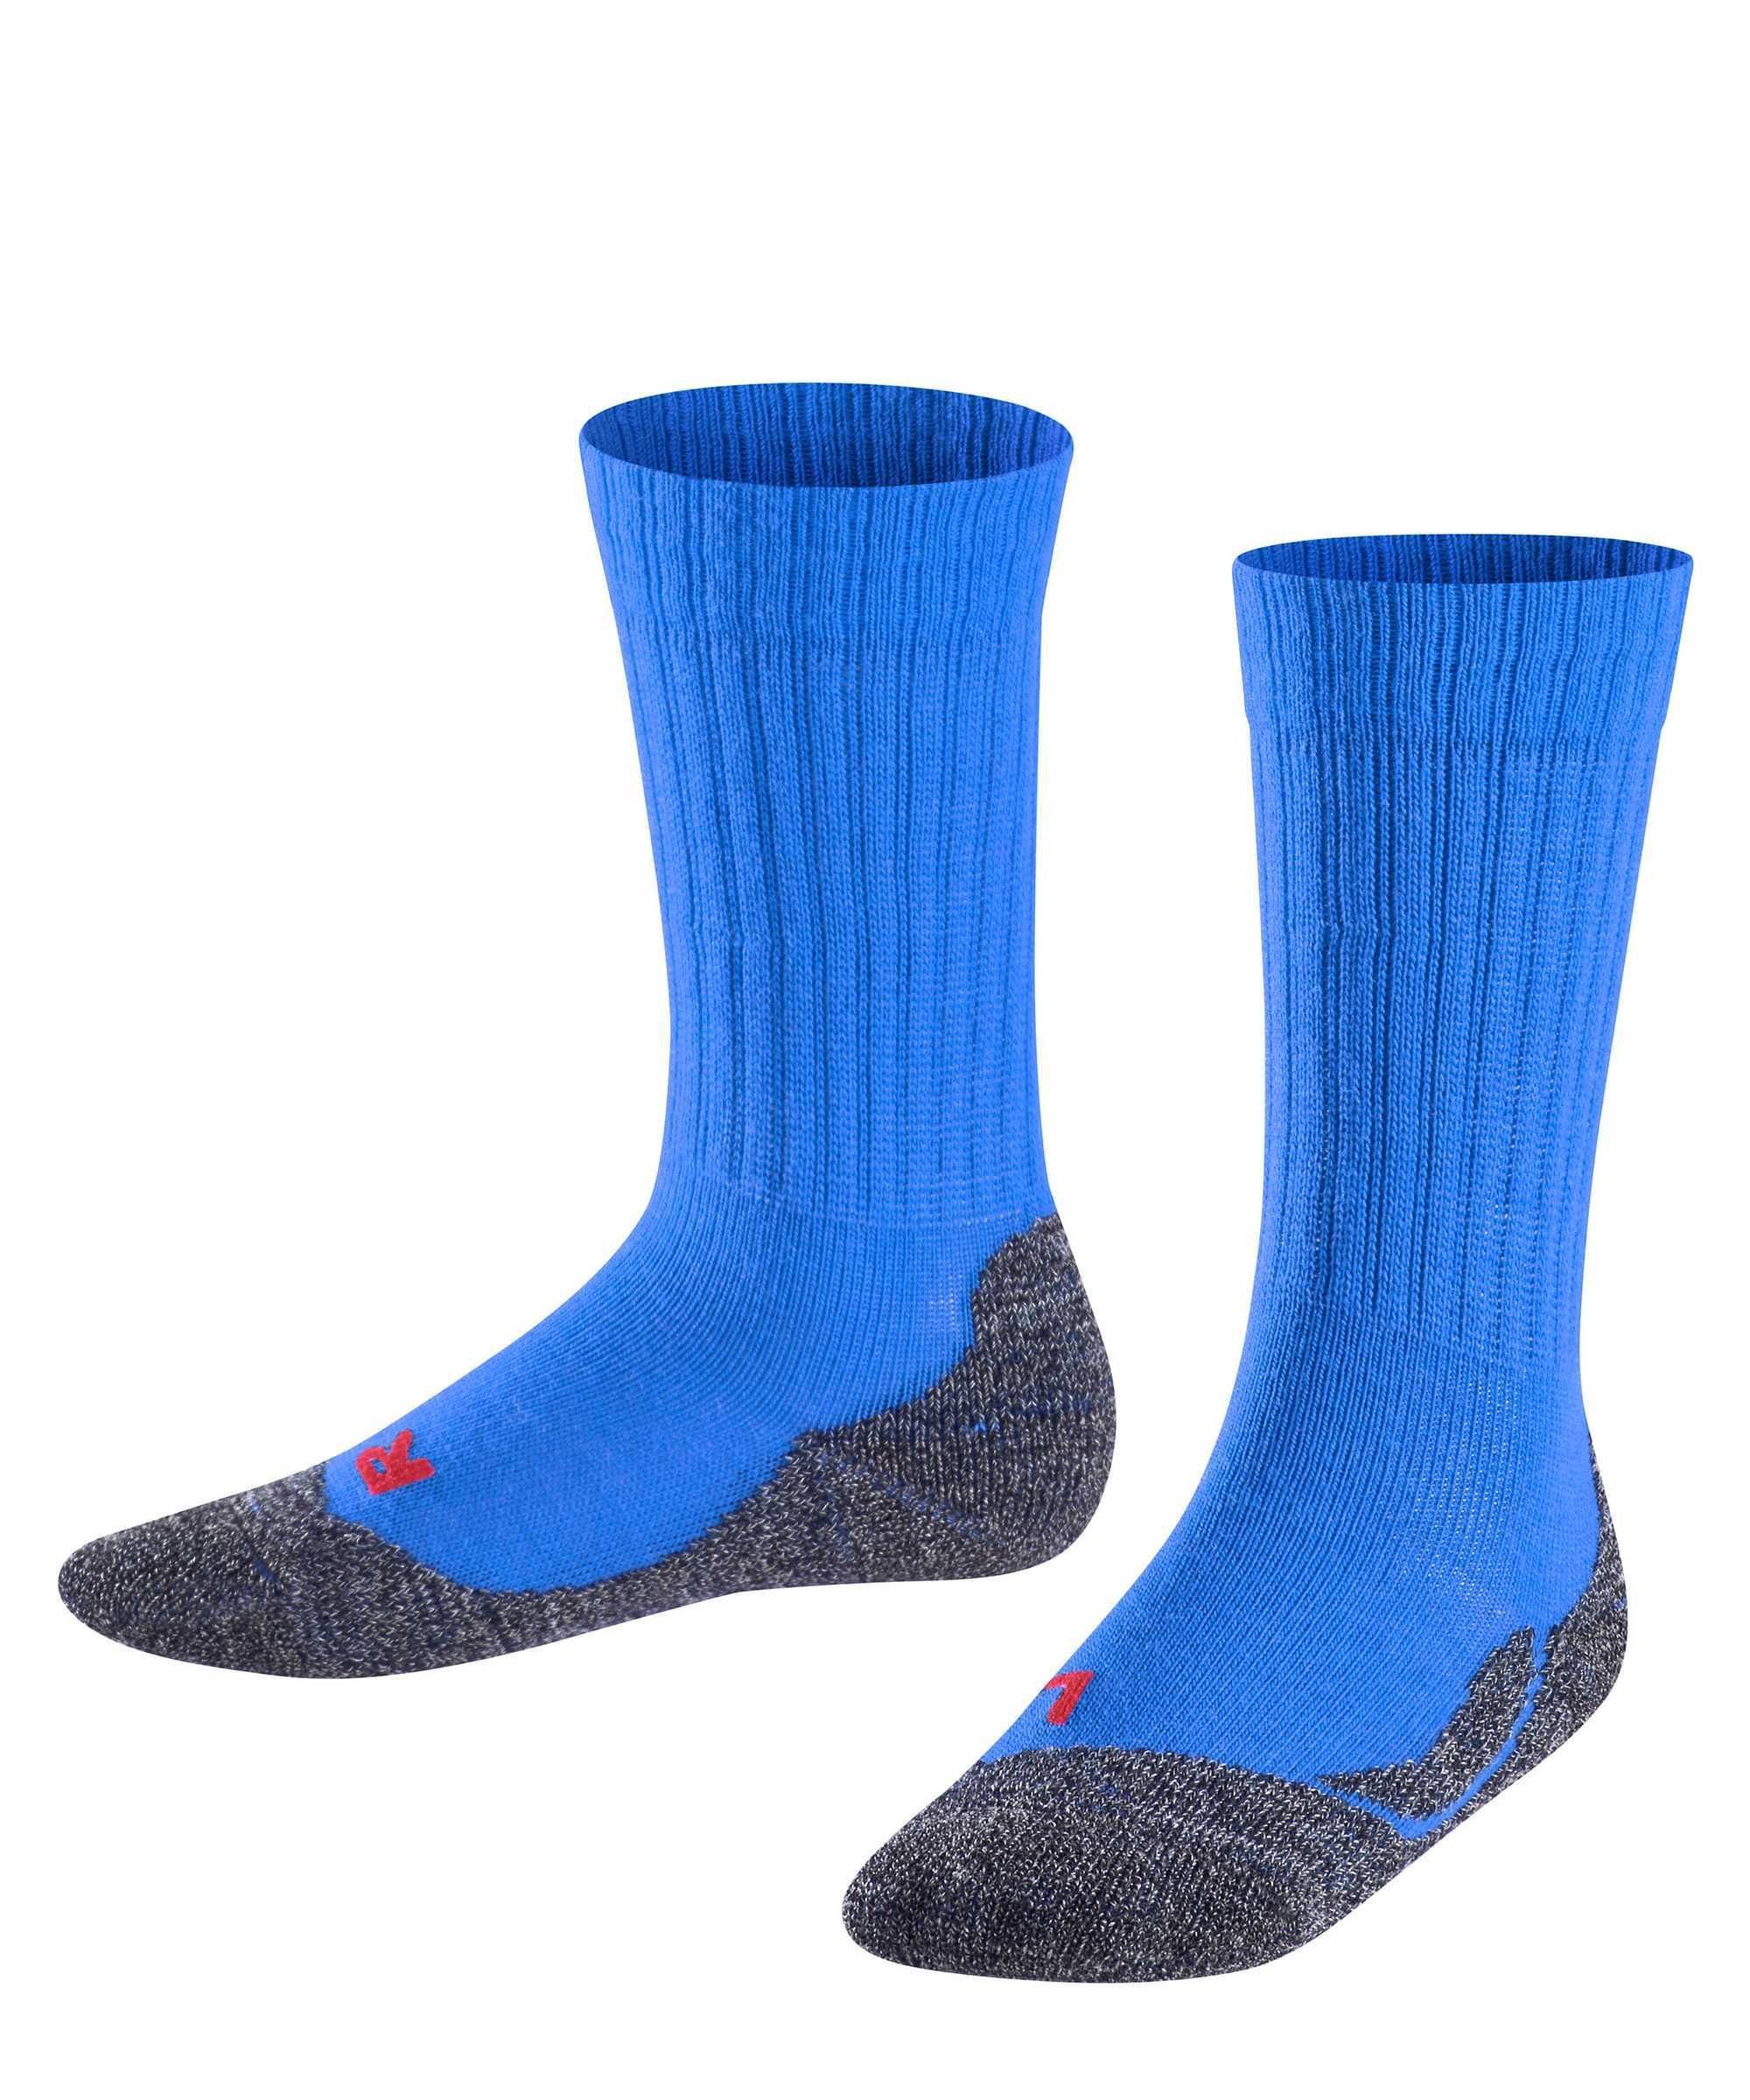 FALKE Freizeitsocken Warm, Active Blau - Socken Kinder Kurzsocken